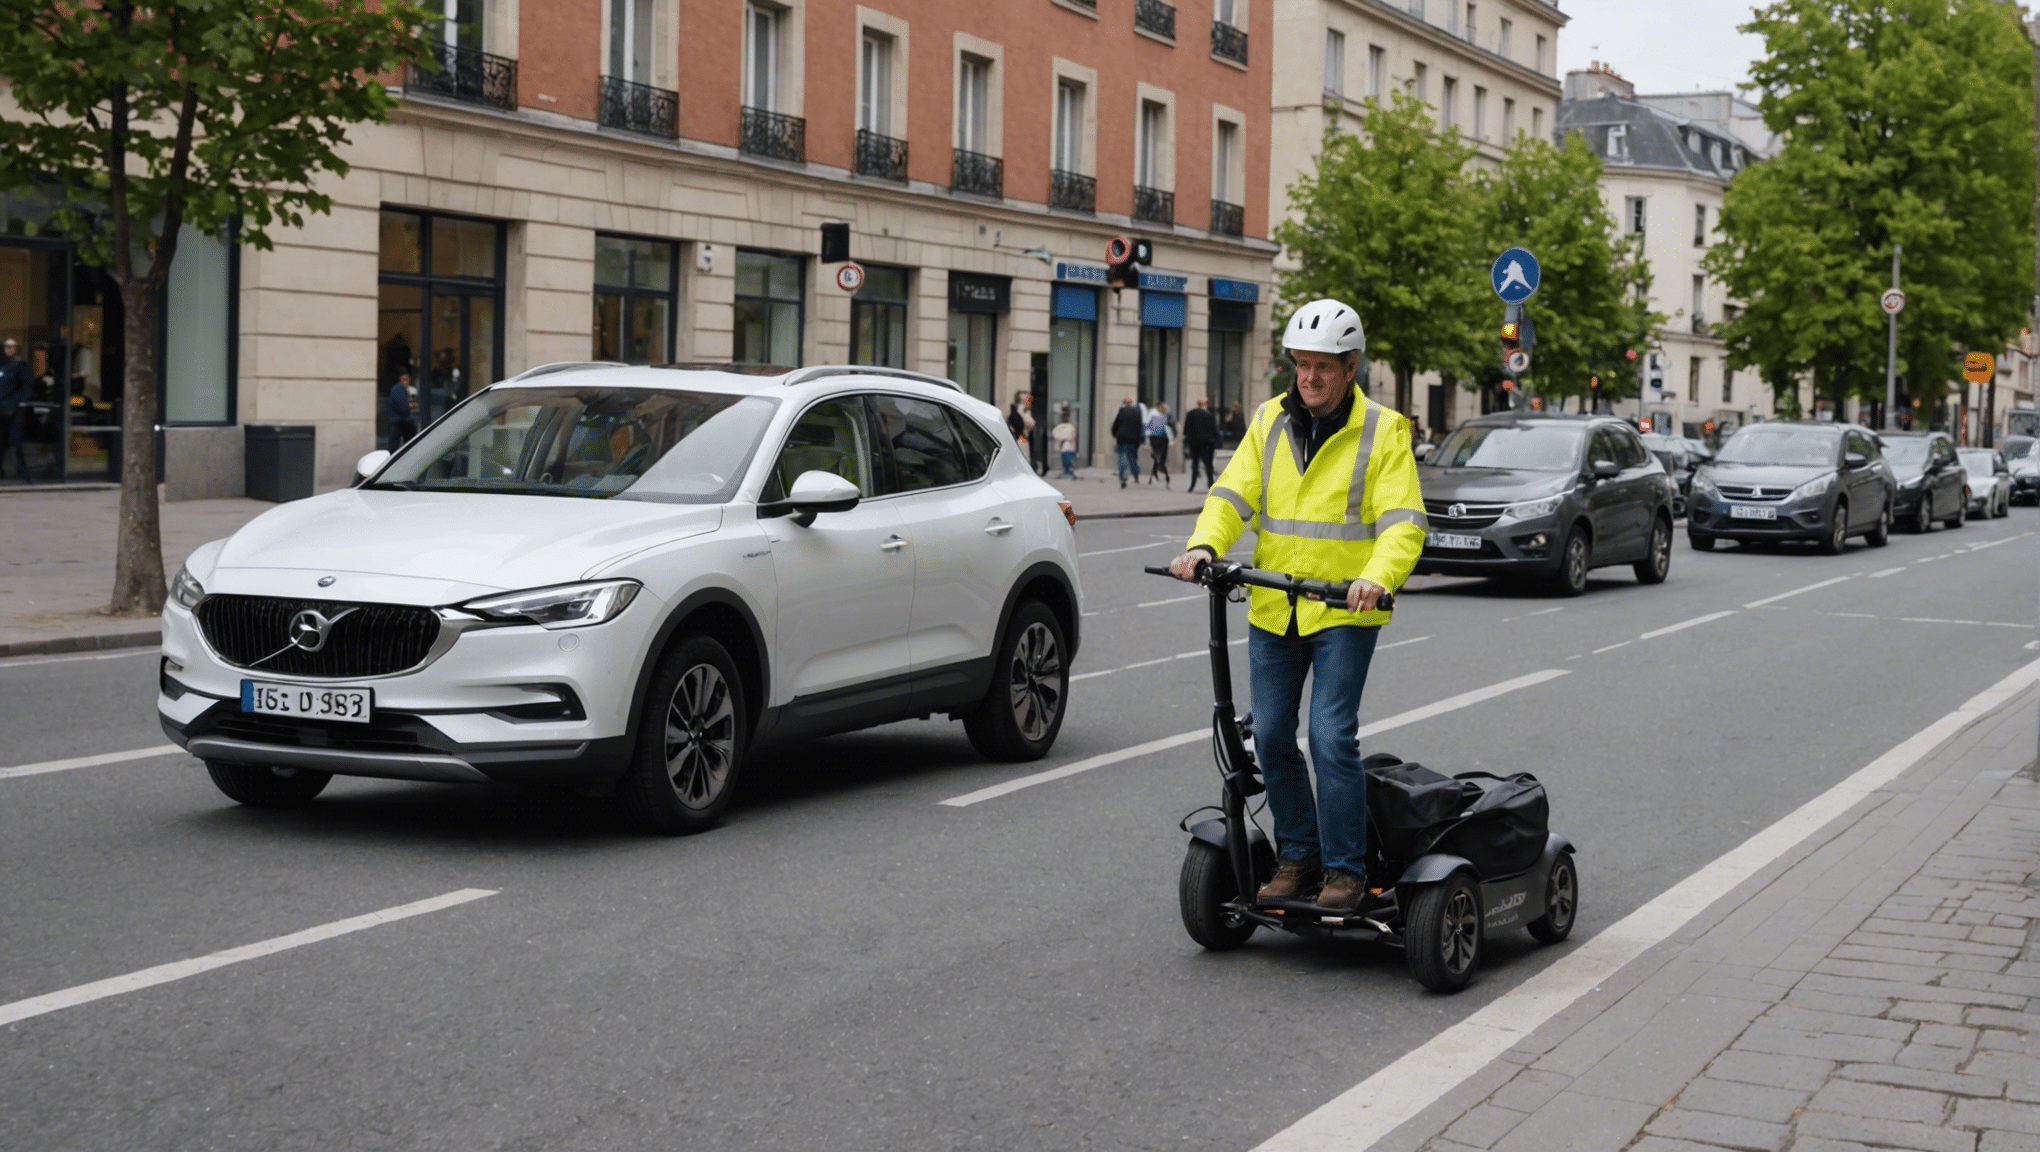 découvrez comment adapter les véhicules pour les personnes à mobilité réduite et faciliter leur quotidien. conseils, solutions et innovations pour une meilleure accessibilité.